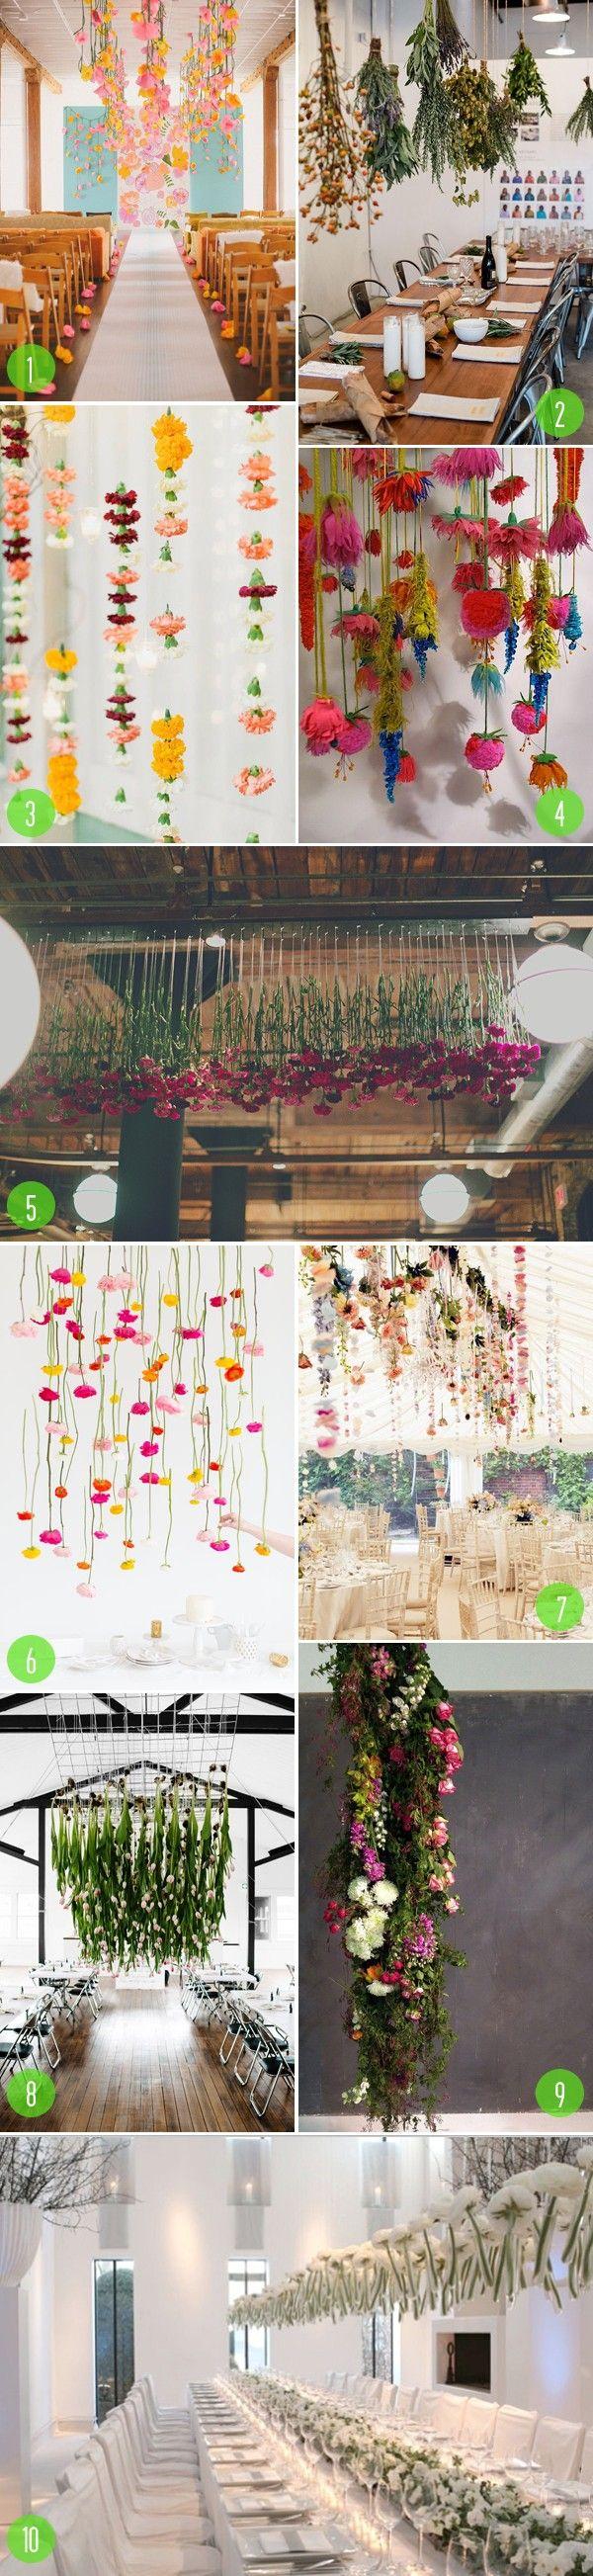 Wedding - Top 10: Hanging Florals